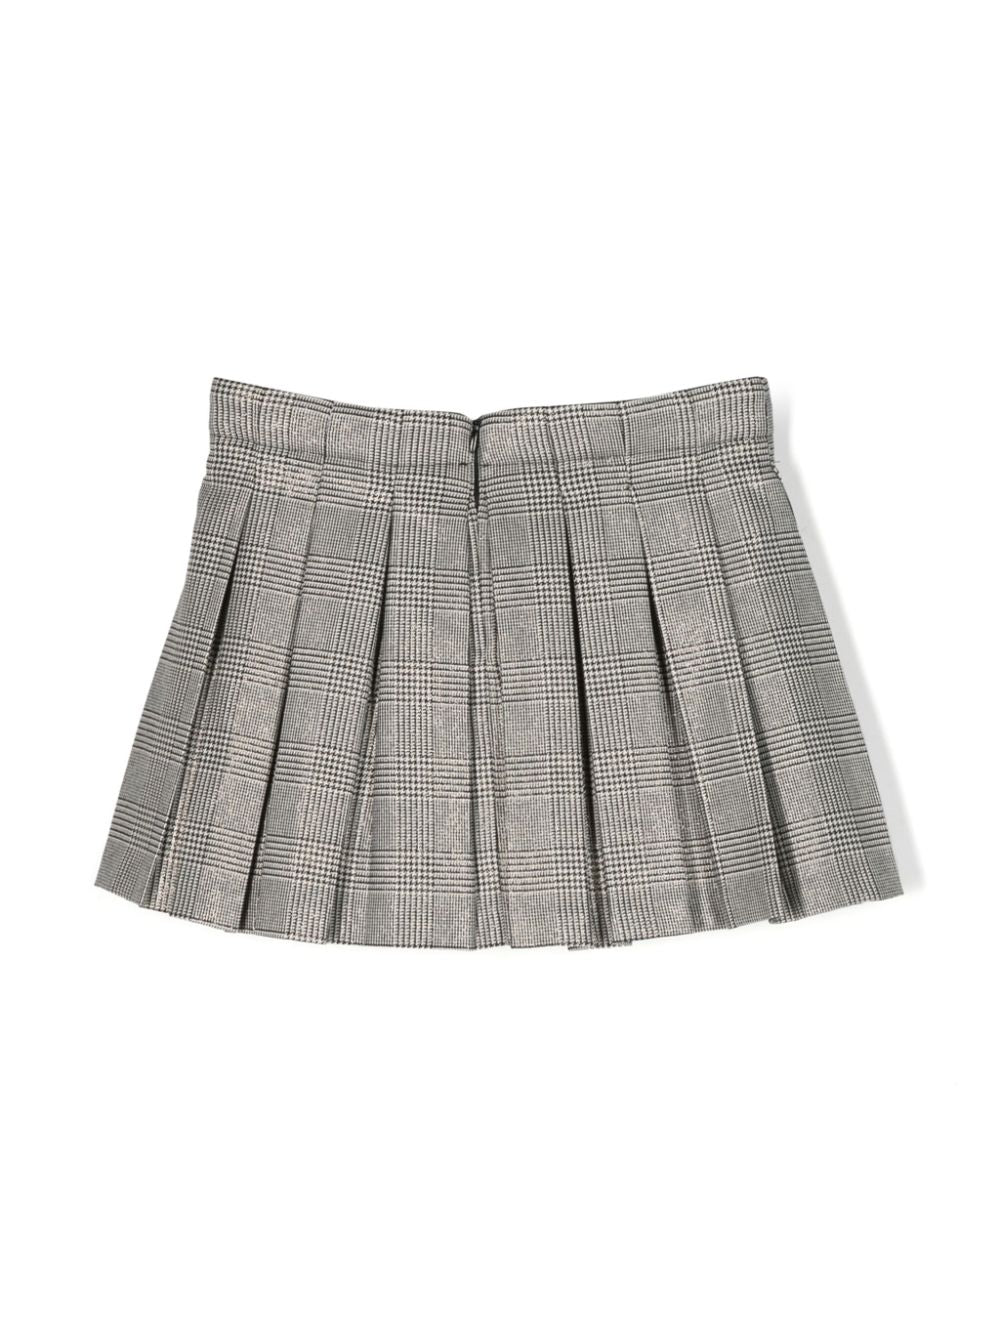 Gray cotton skirt for girls